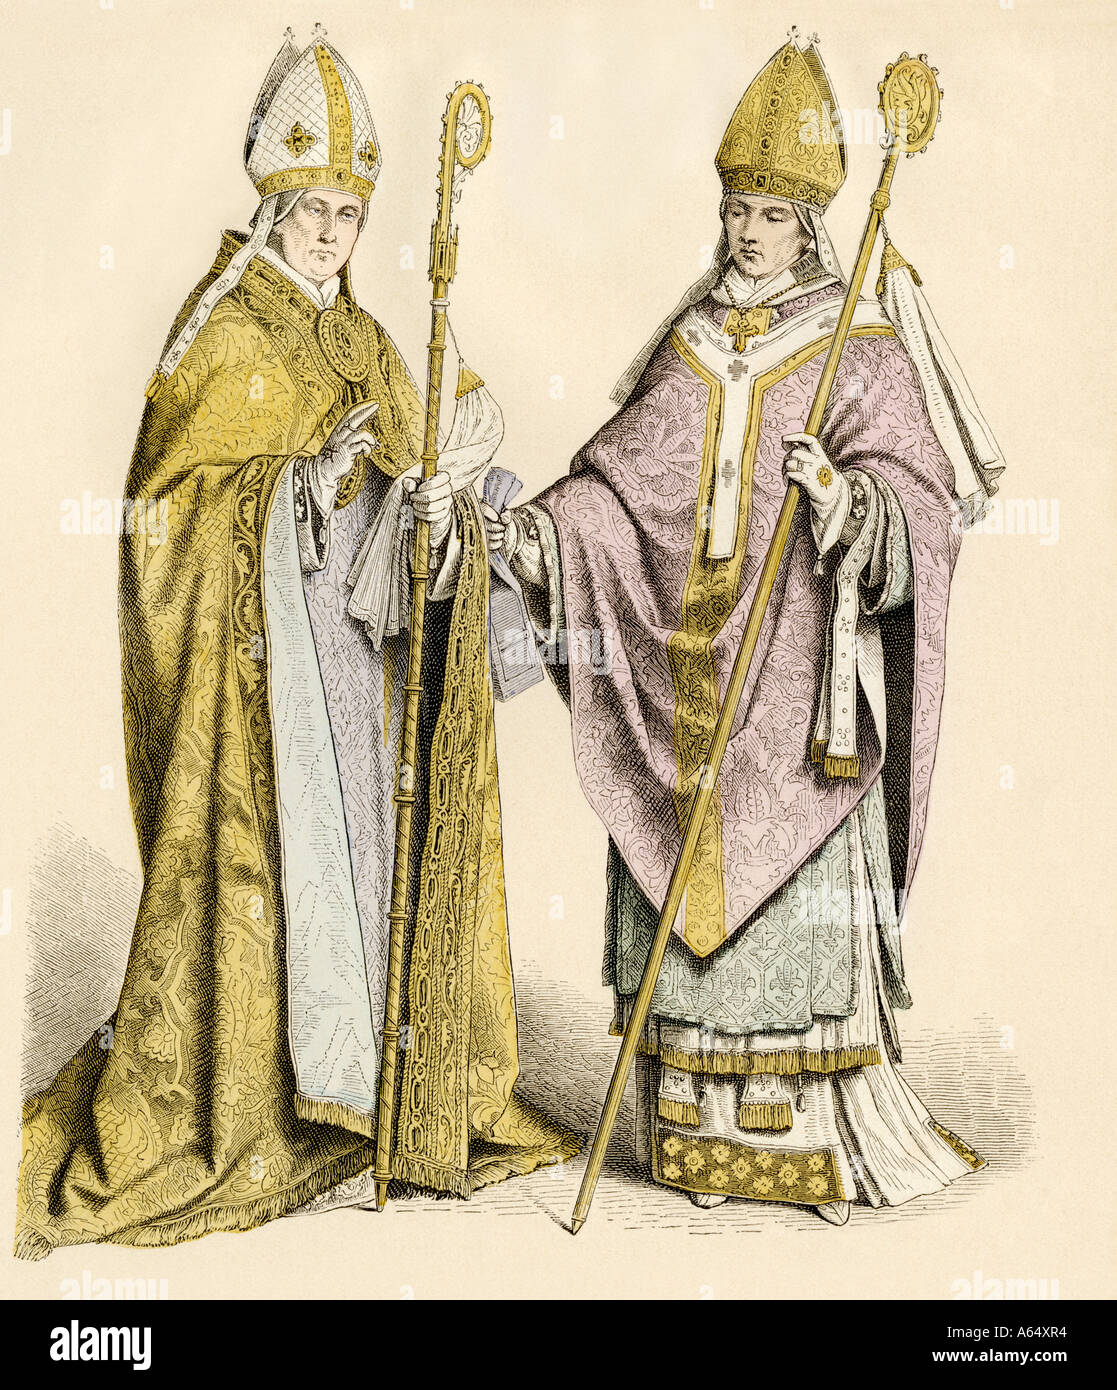 Römisch-katholische Bischof in einem Chor robe Links und ein Bischof in der Gewänder für den Vorsitz über die Masse 1500s und 1600s. Hand-farbig drucken Stockfoto